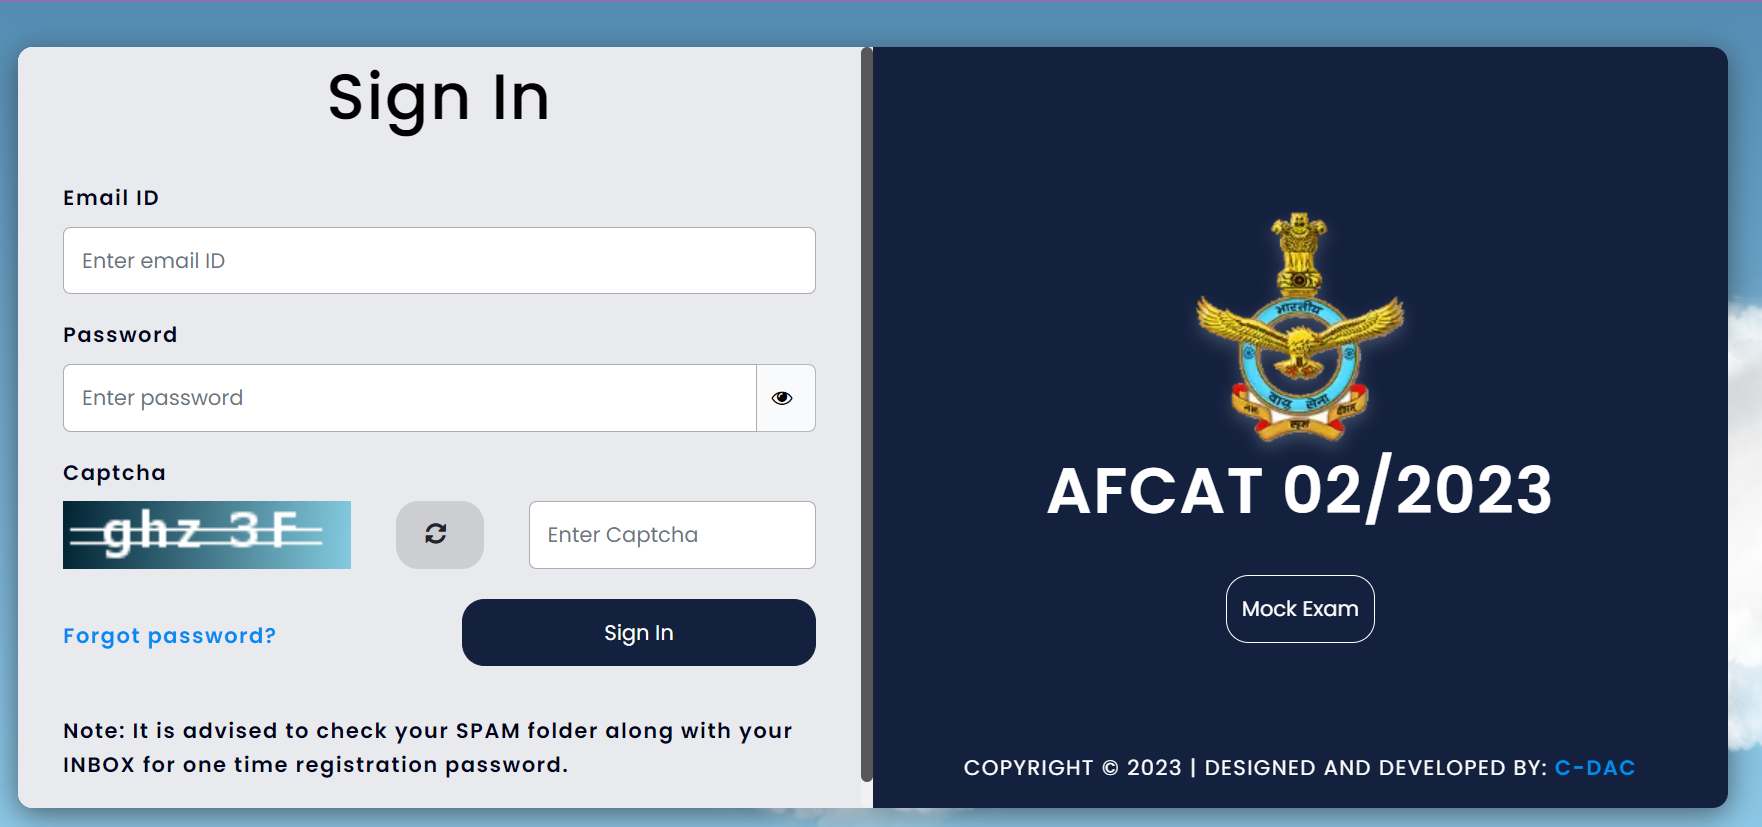 AFCAT 2 परिणाम 2023 डाउनलोड करने का डायरेक्ट लिंक यहां से प्राप्त करें